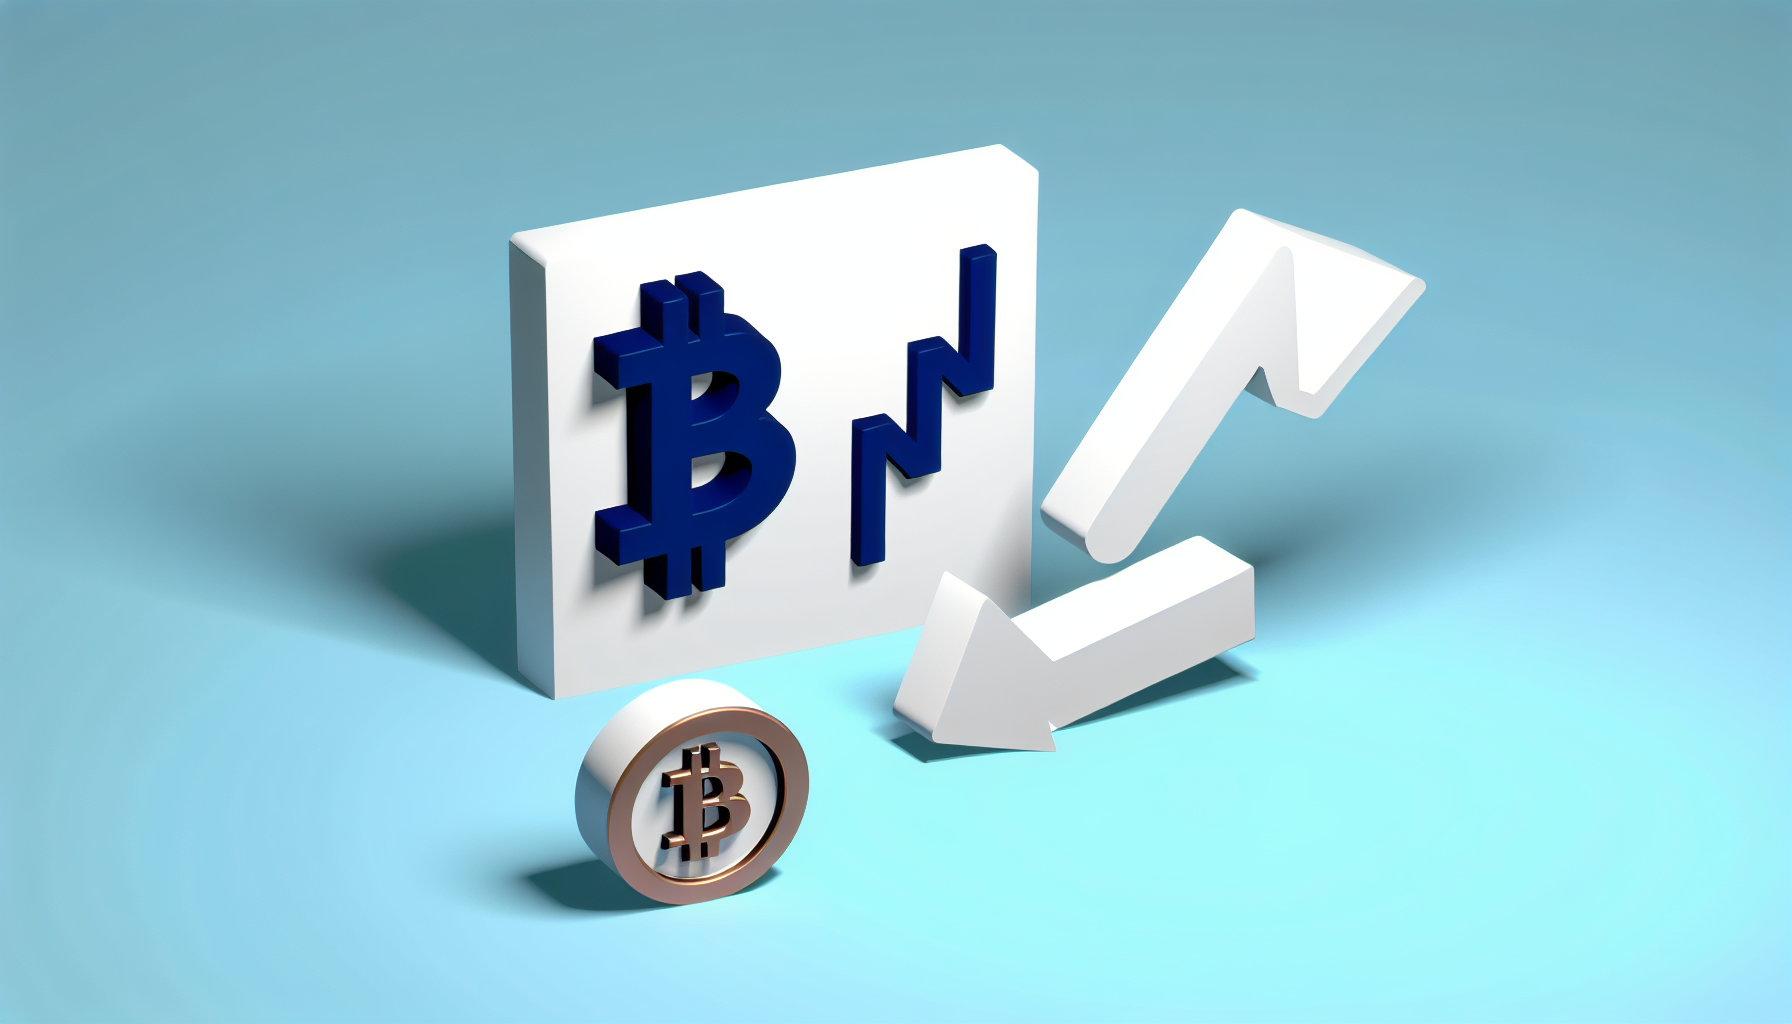                               USA genehmigt Bitcoin ETFs: Neue Chancen für Investoren                             
                              